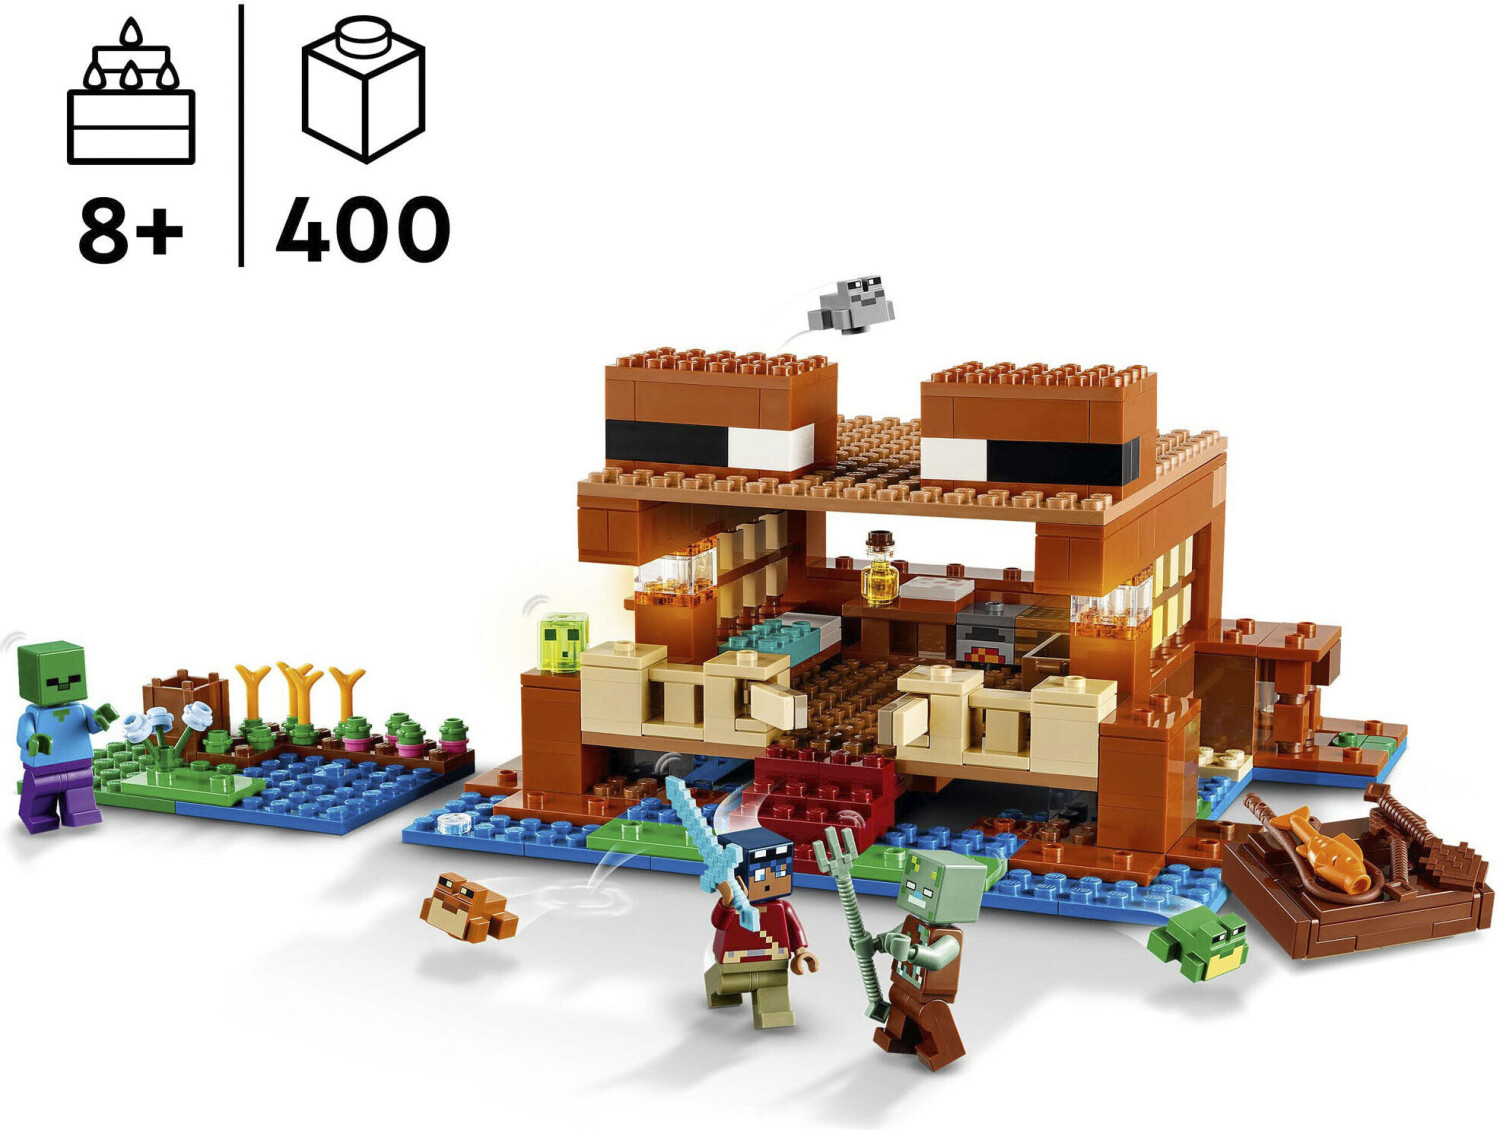 La maison de la grenouille 21256 | Minecraft® | Boutique LEGO® officielle FR